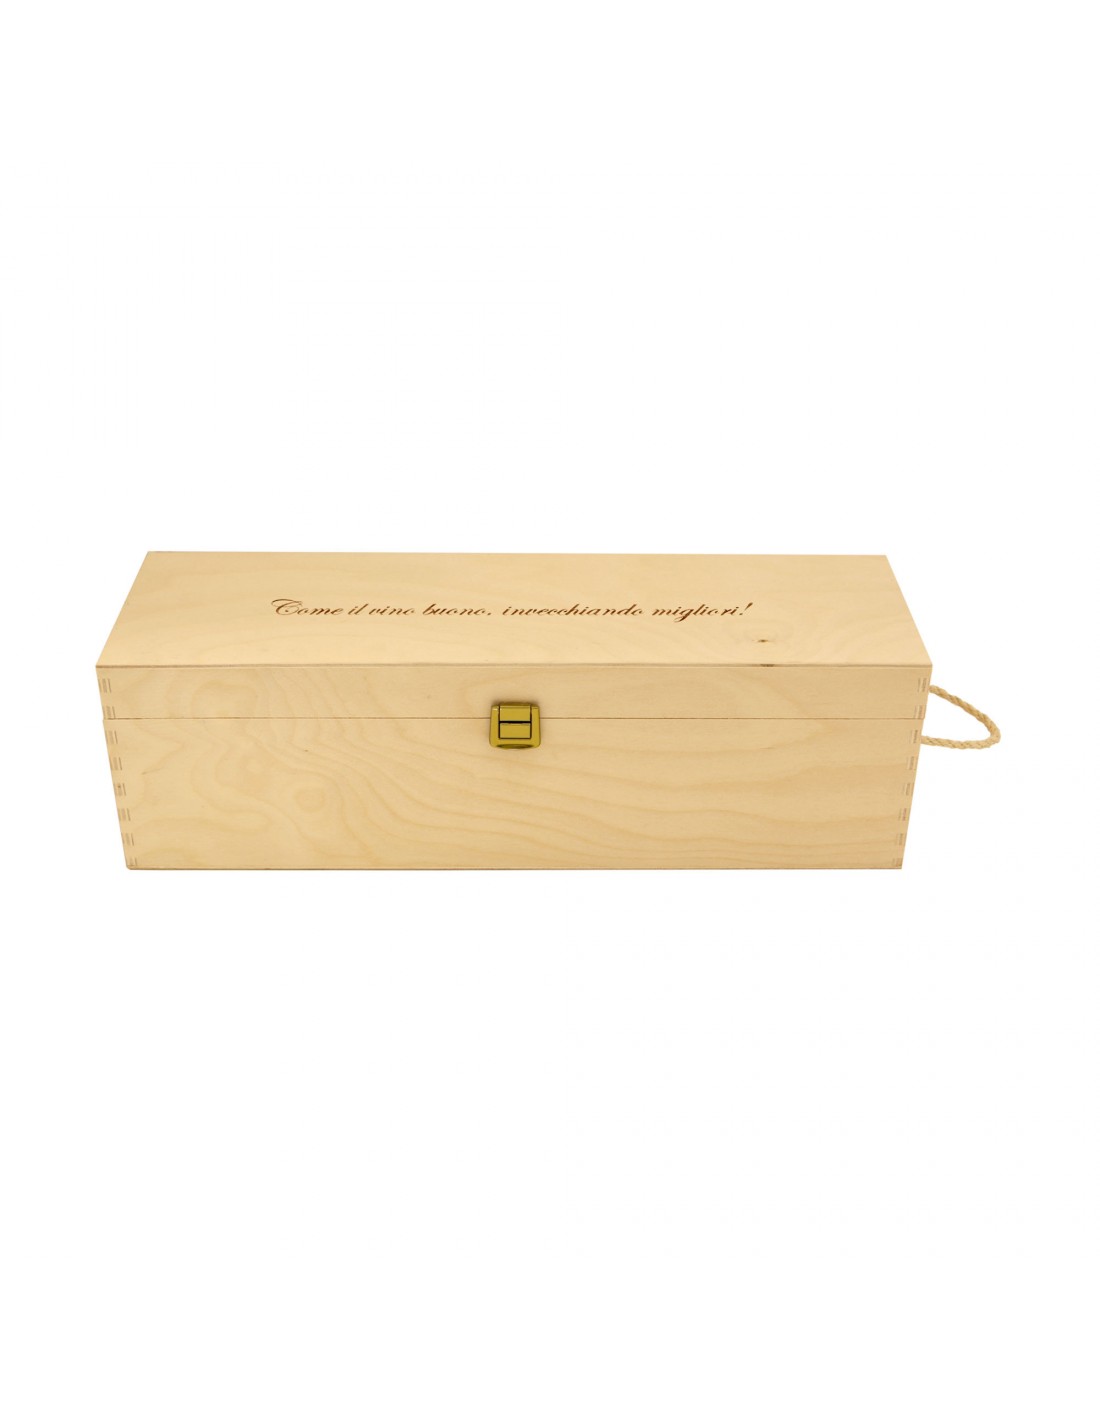 Cassetta in legno per vino personalizzata - 1 bottiglia magnum - Ilva Magnum WINE ATTACH Grandi